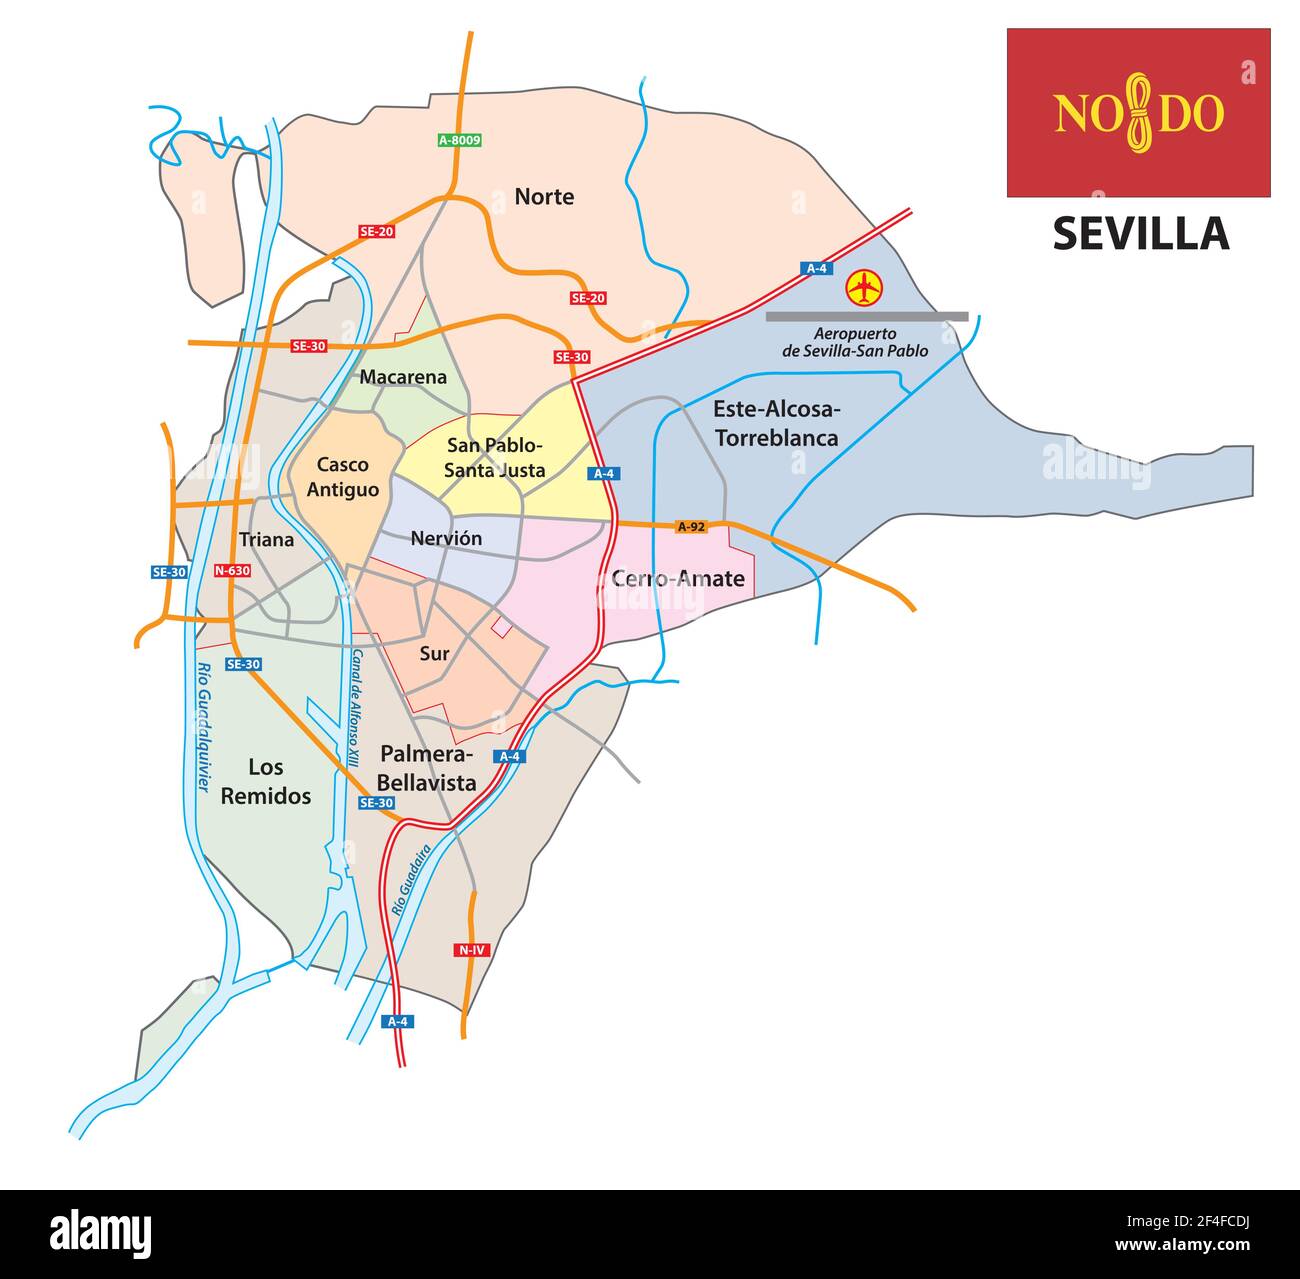 Plan administratif et de la rue de la capitale andalouse Séville, Espagne Illustration de Vecteur